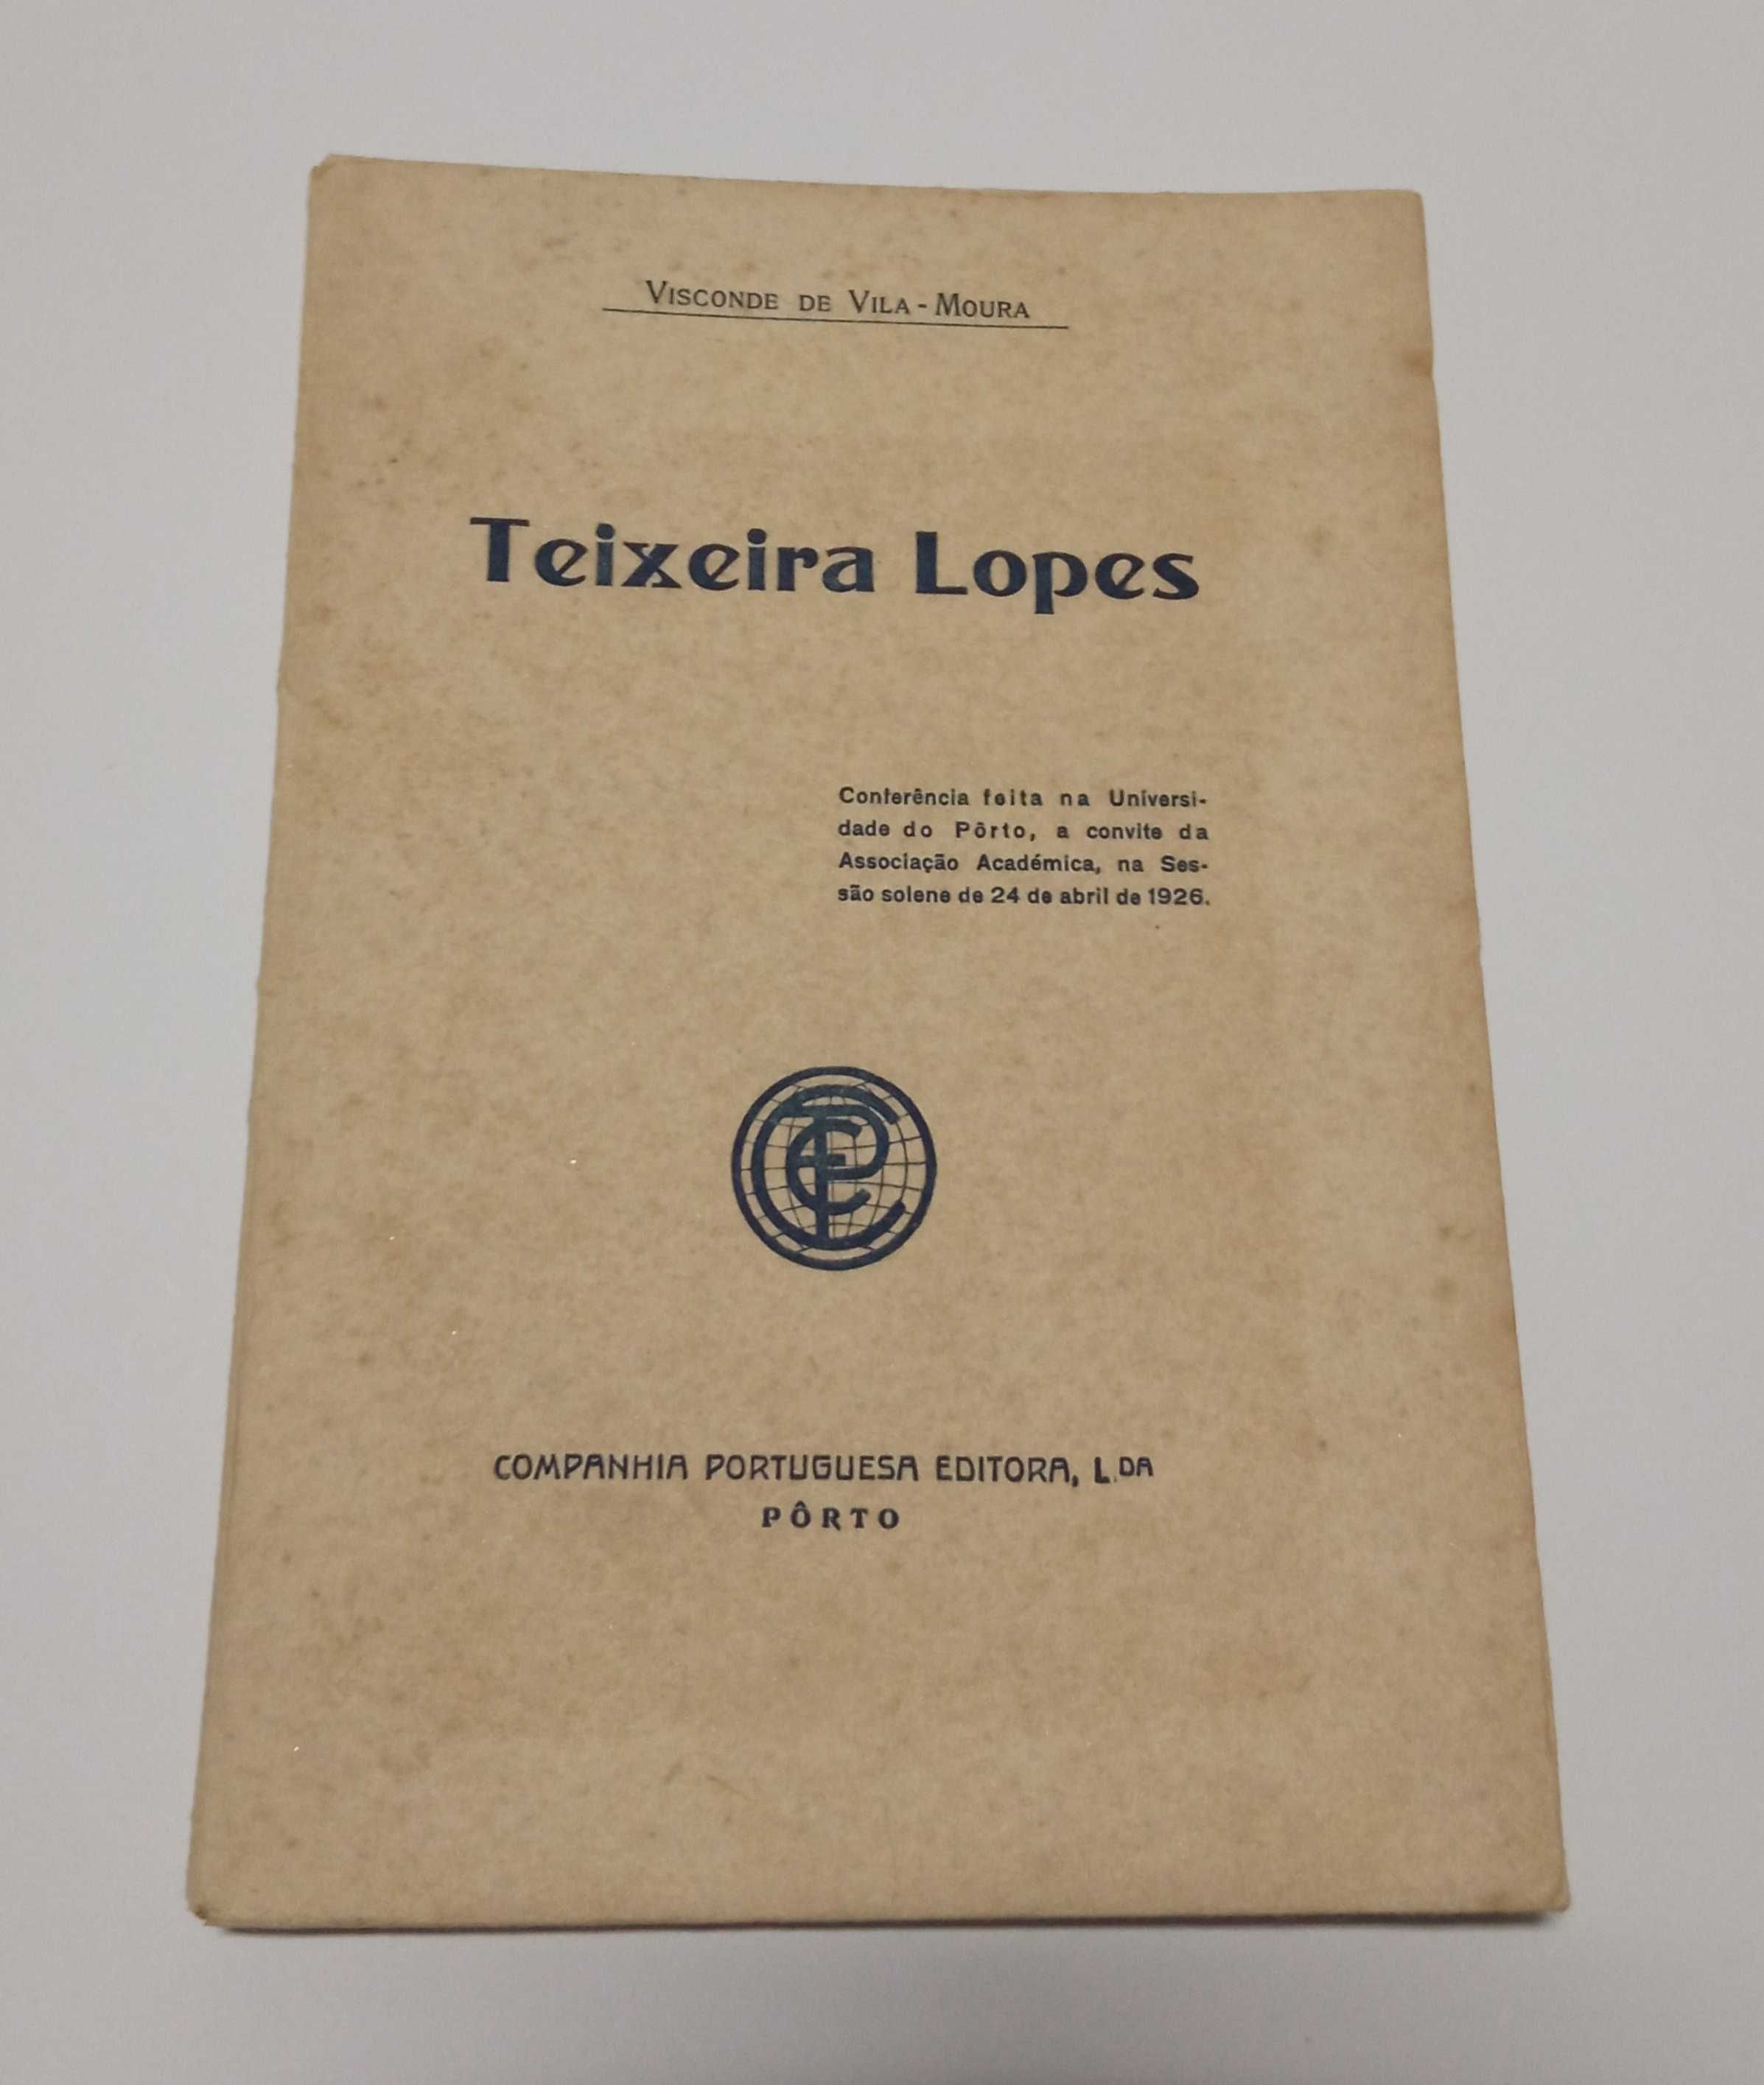 Com dedicatória: Teixeira Lopes, pelo Visconde de Vila-moura, de 1926